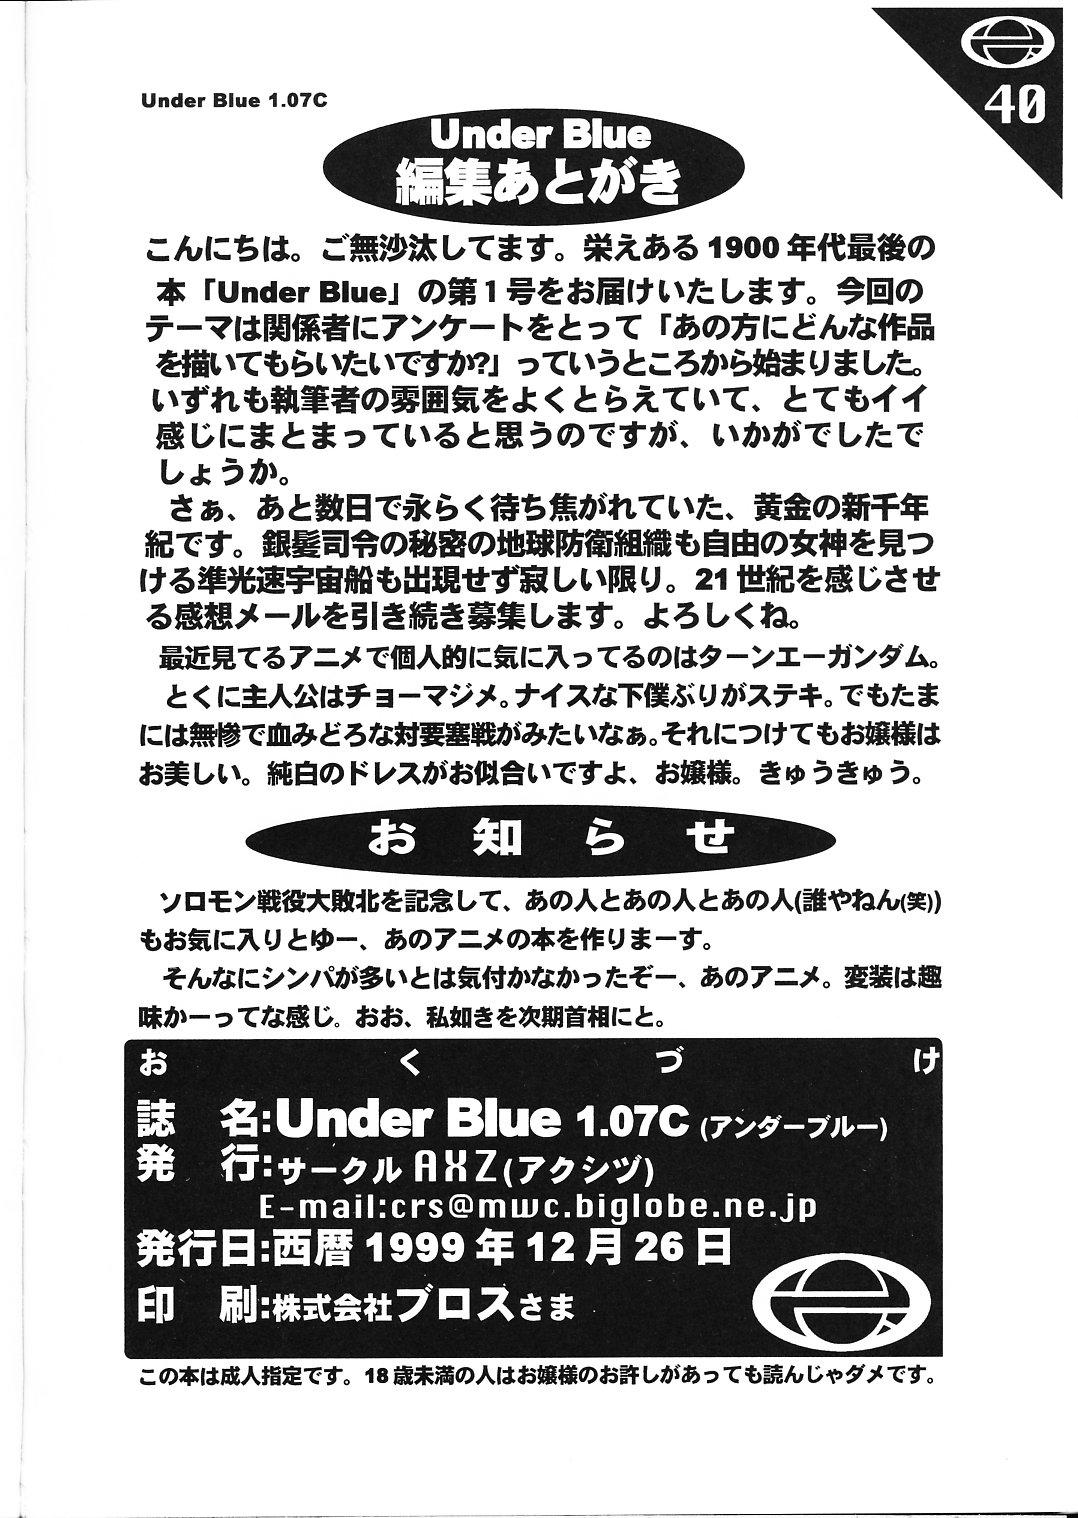 Under Blue 1.07C 40